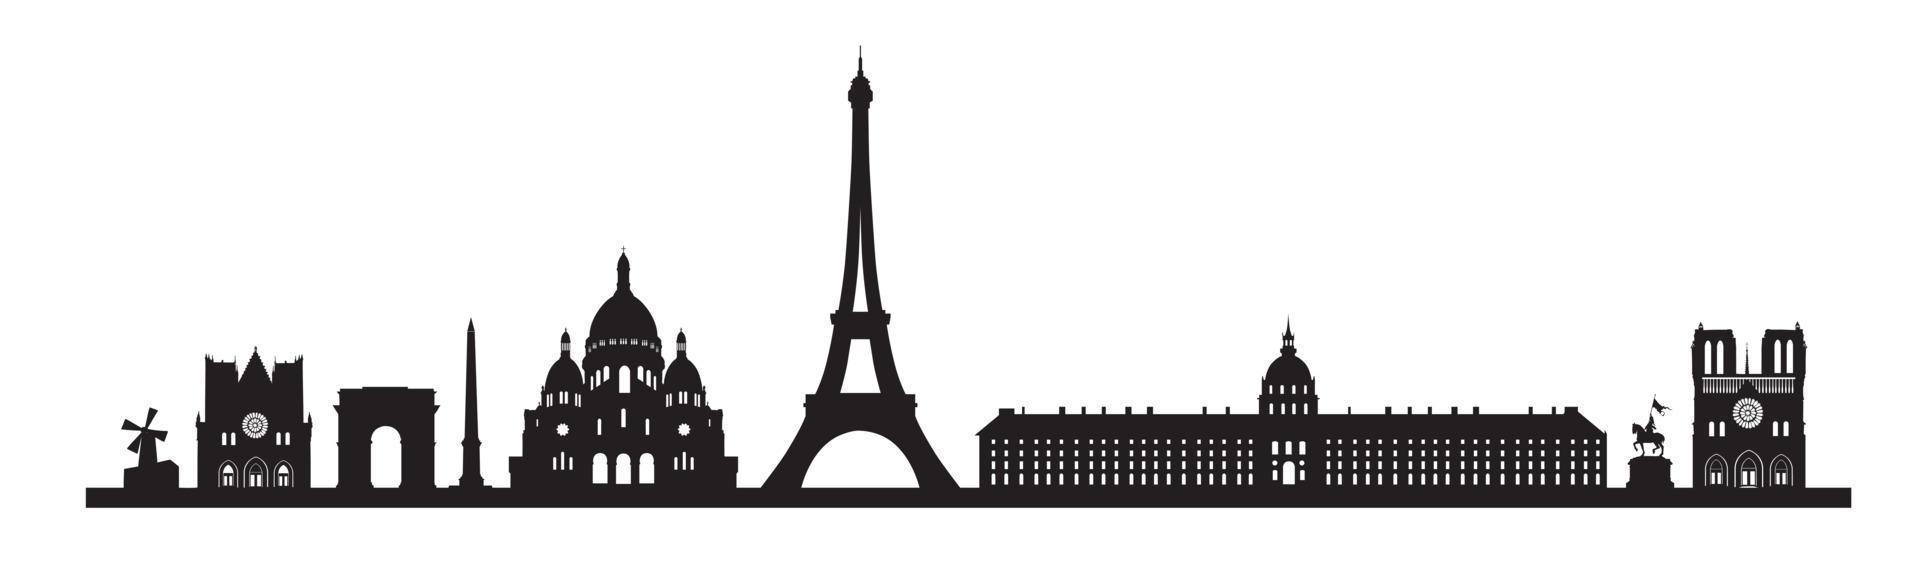 Parijs skyline achtergrond. Parijs beroemde bezienswaardigheid icon set. frankrijk, parijs reizen zwart stadsgezicht vector